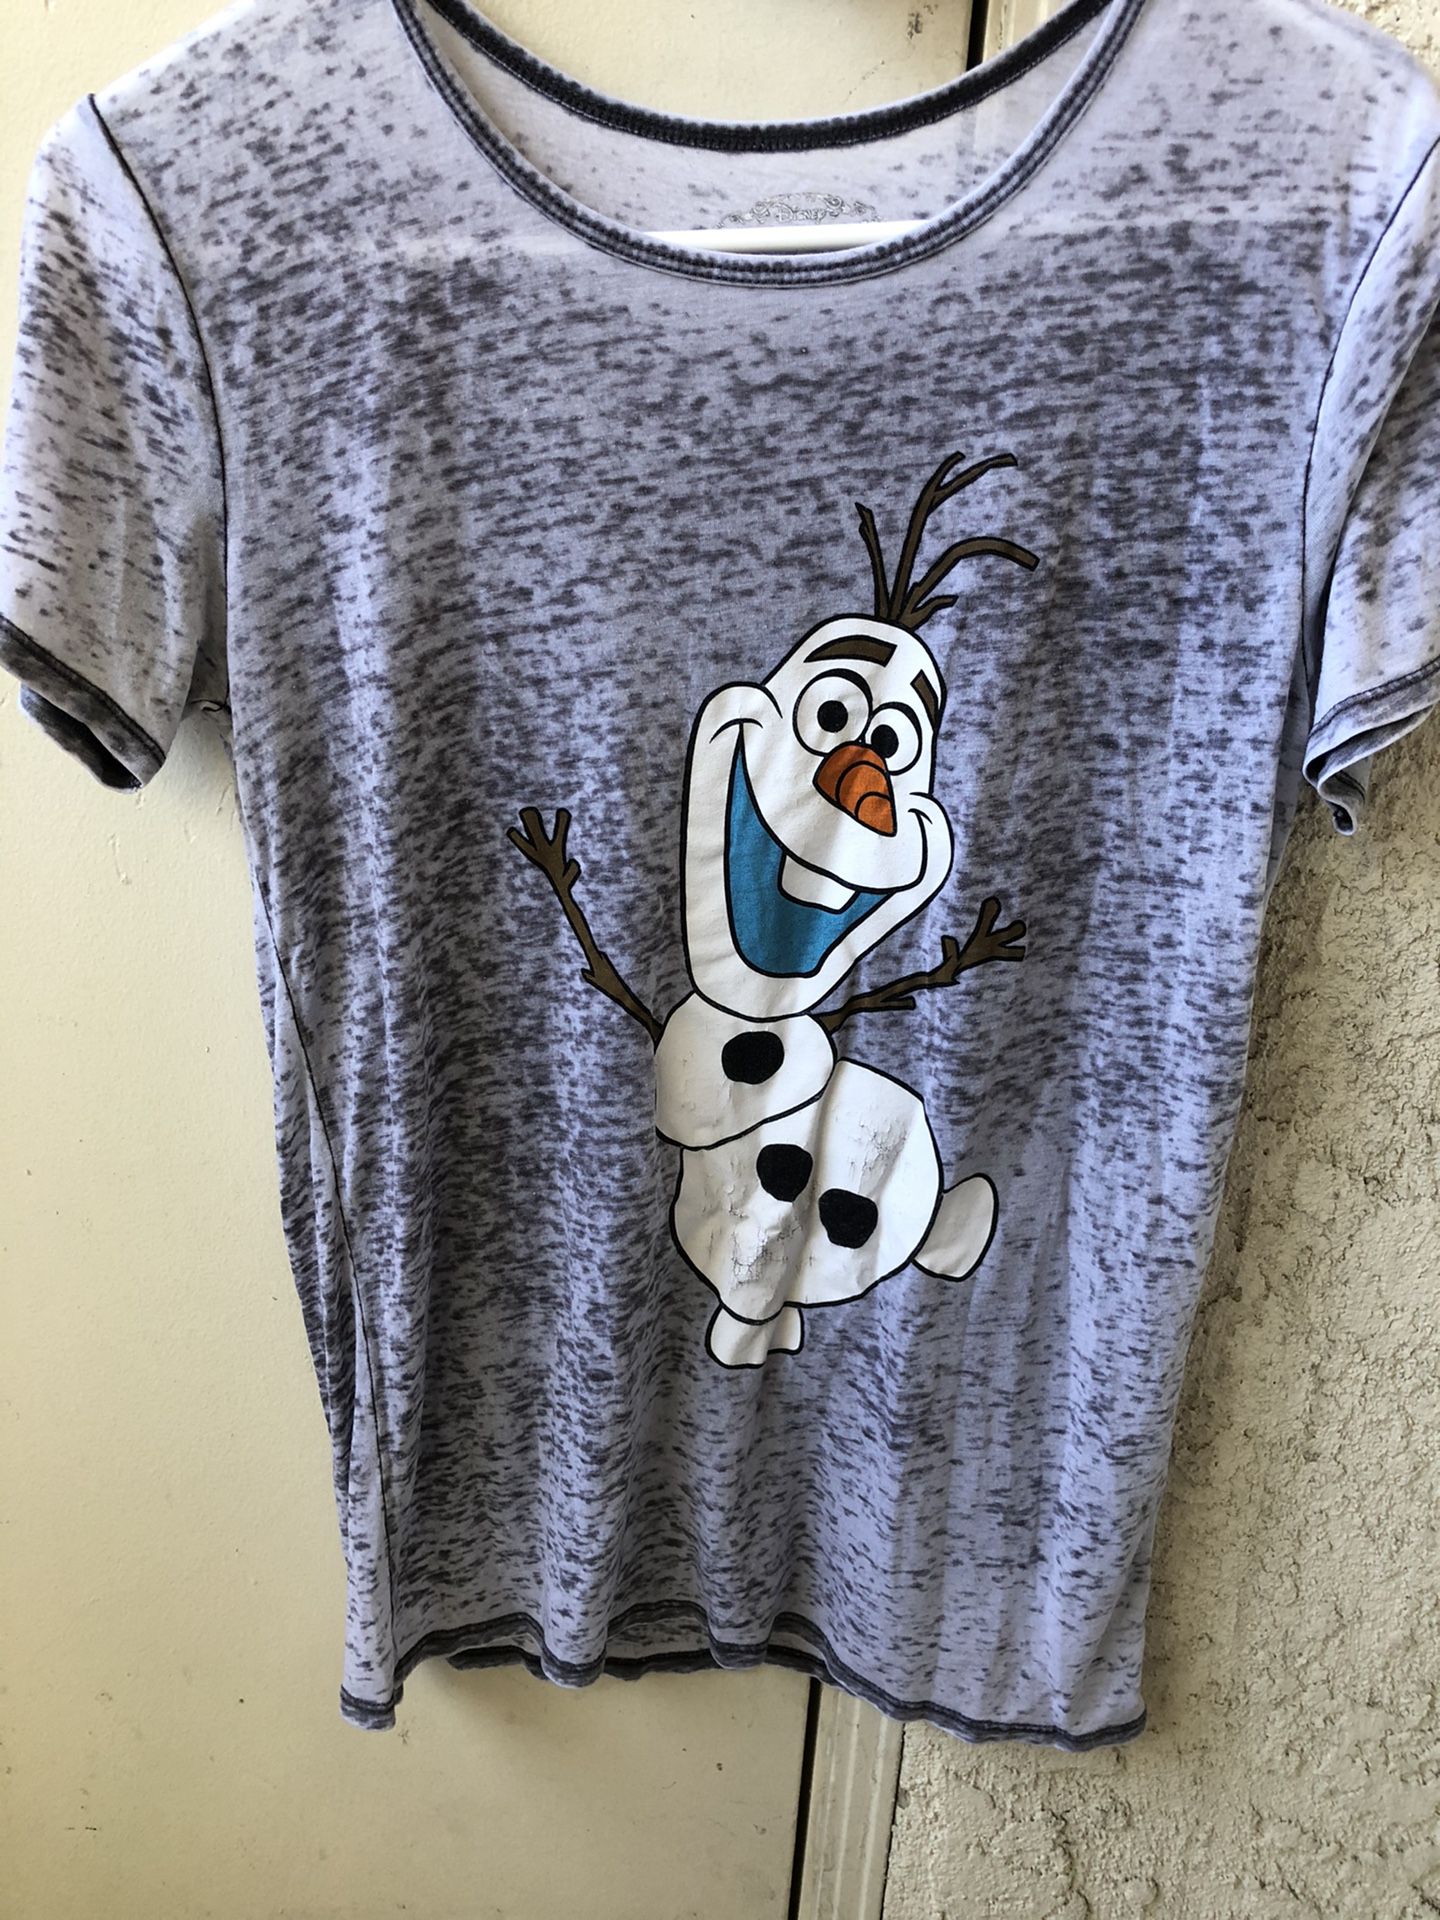 Olaf T-Shirt